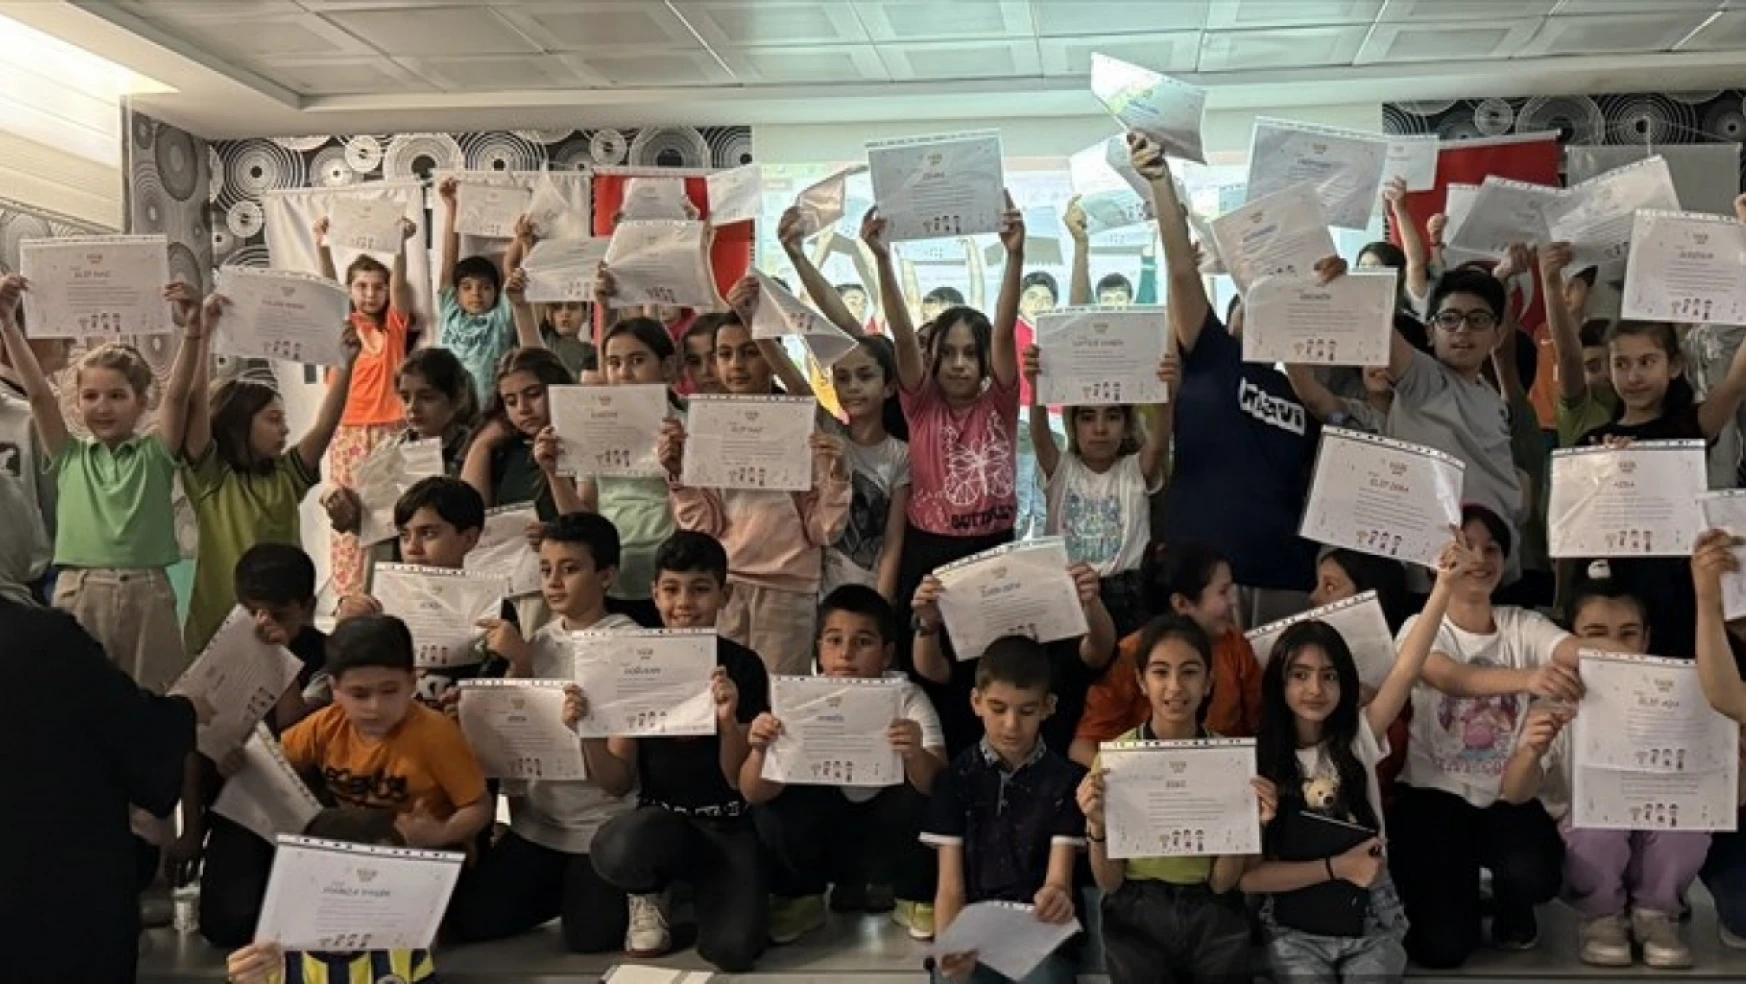 'TÜİK Çocuk' portalı Malatya'da ilkokul öğrencilerine tanıtıldı